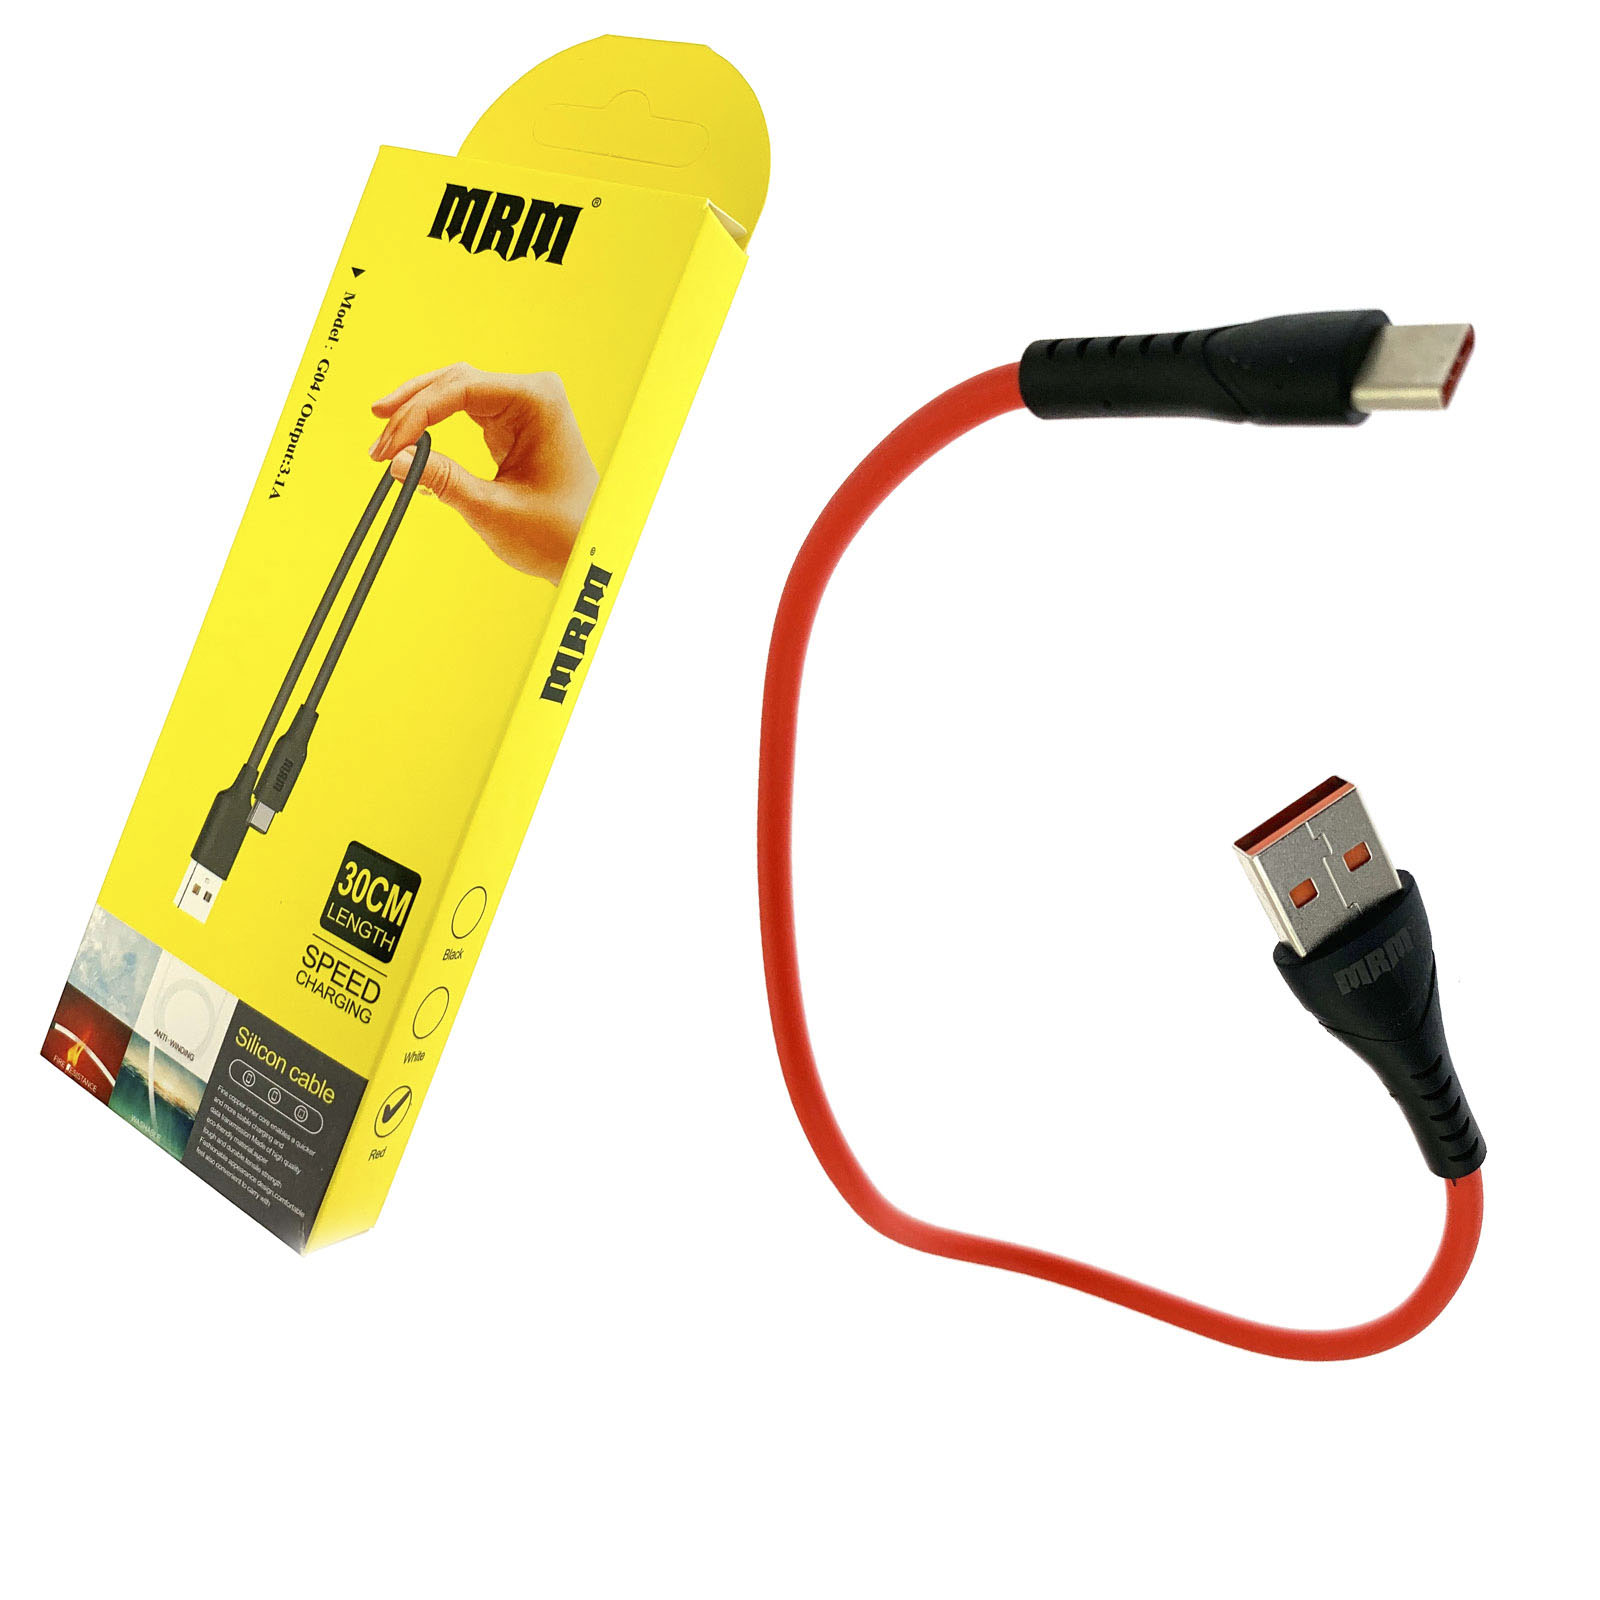 USB Дата кабель MRM G04 Type C, силикон, эластичный, морозоустойчивый, длина 30 см, цвет красный.